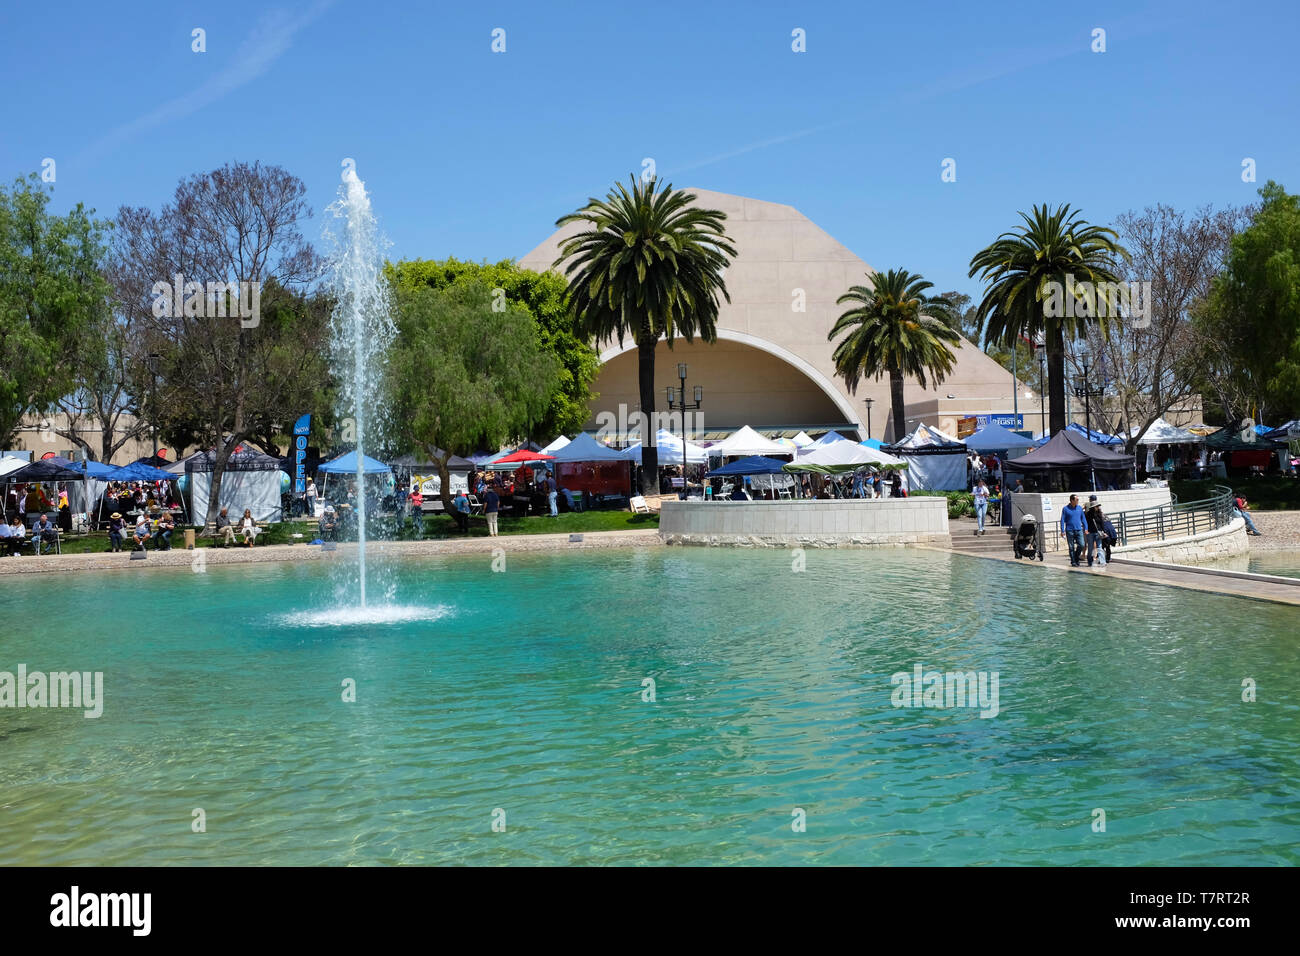 ALISO Viejo, Kalifornien, 4. Mai 2019: Frieden See Brunnen- und Erholungszentrum während des 18. internationalen Festival. Stockfoto